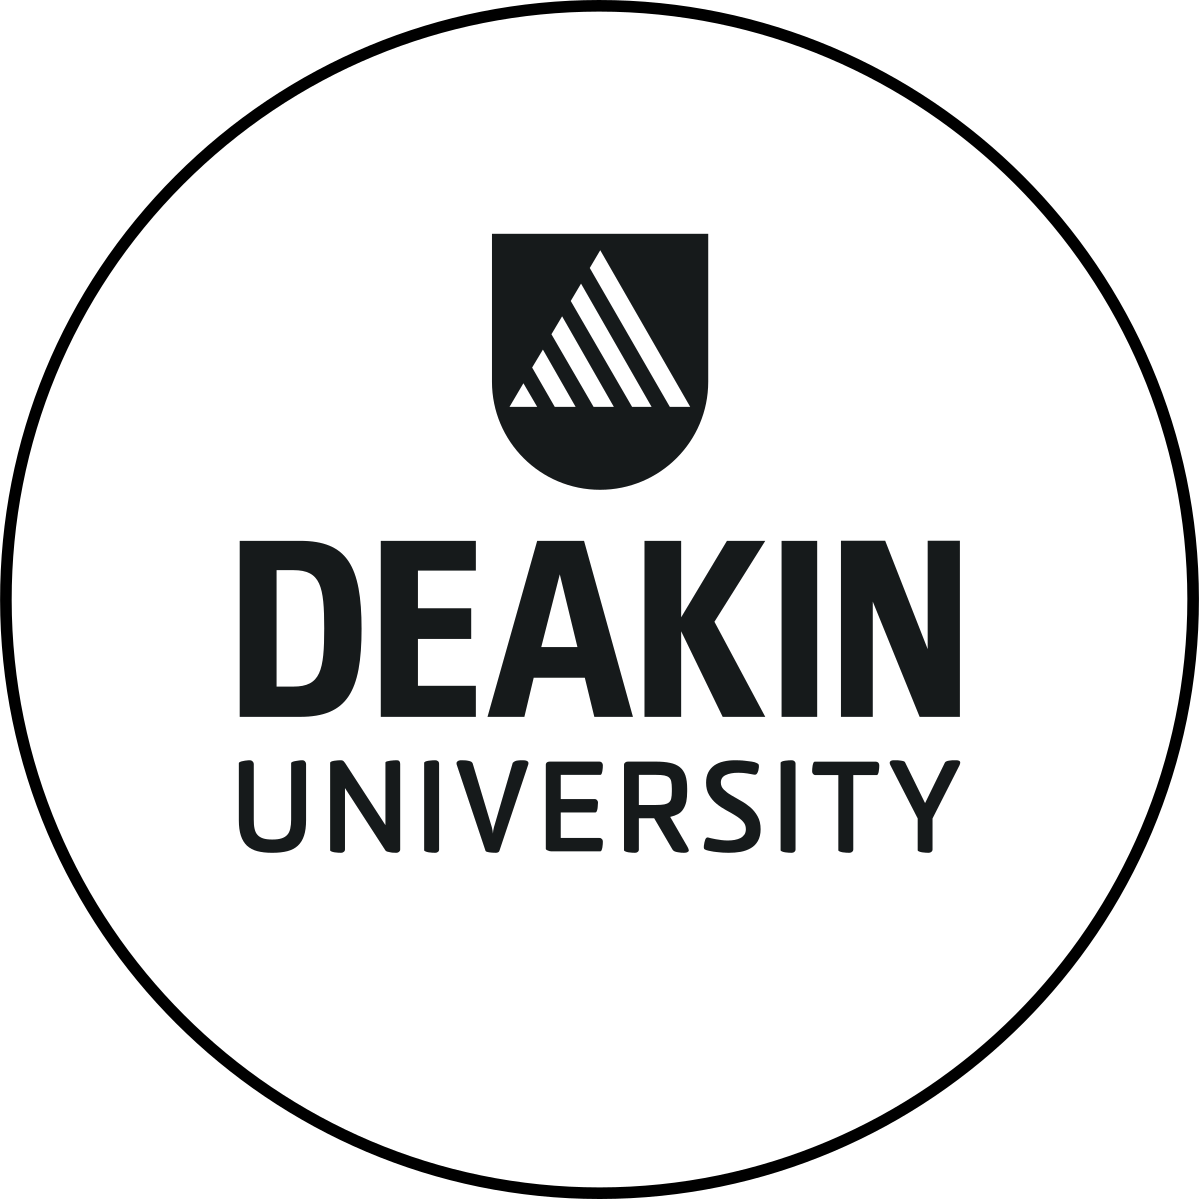 Deakin University logo.